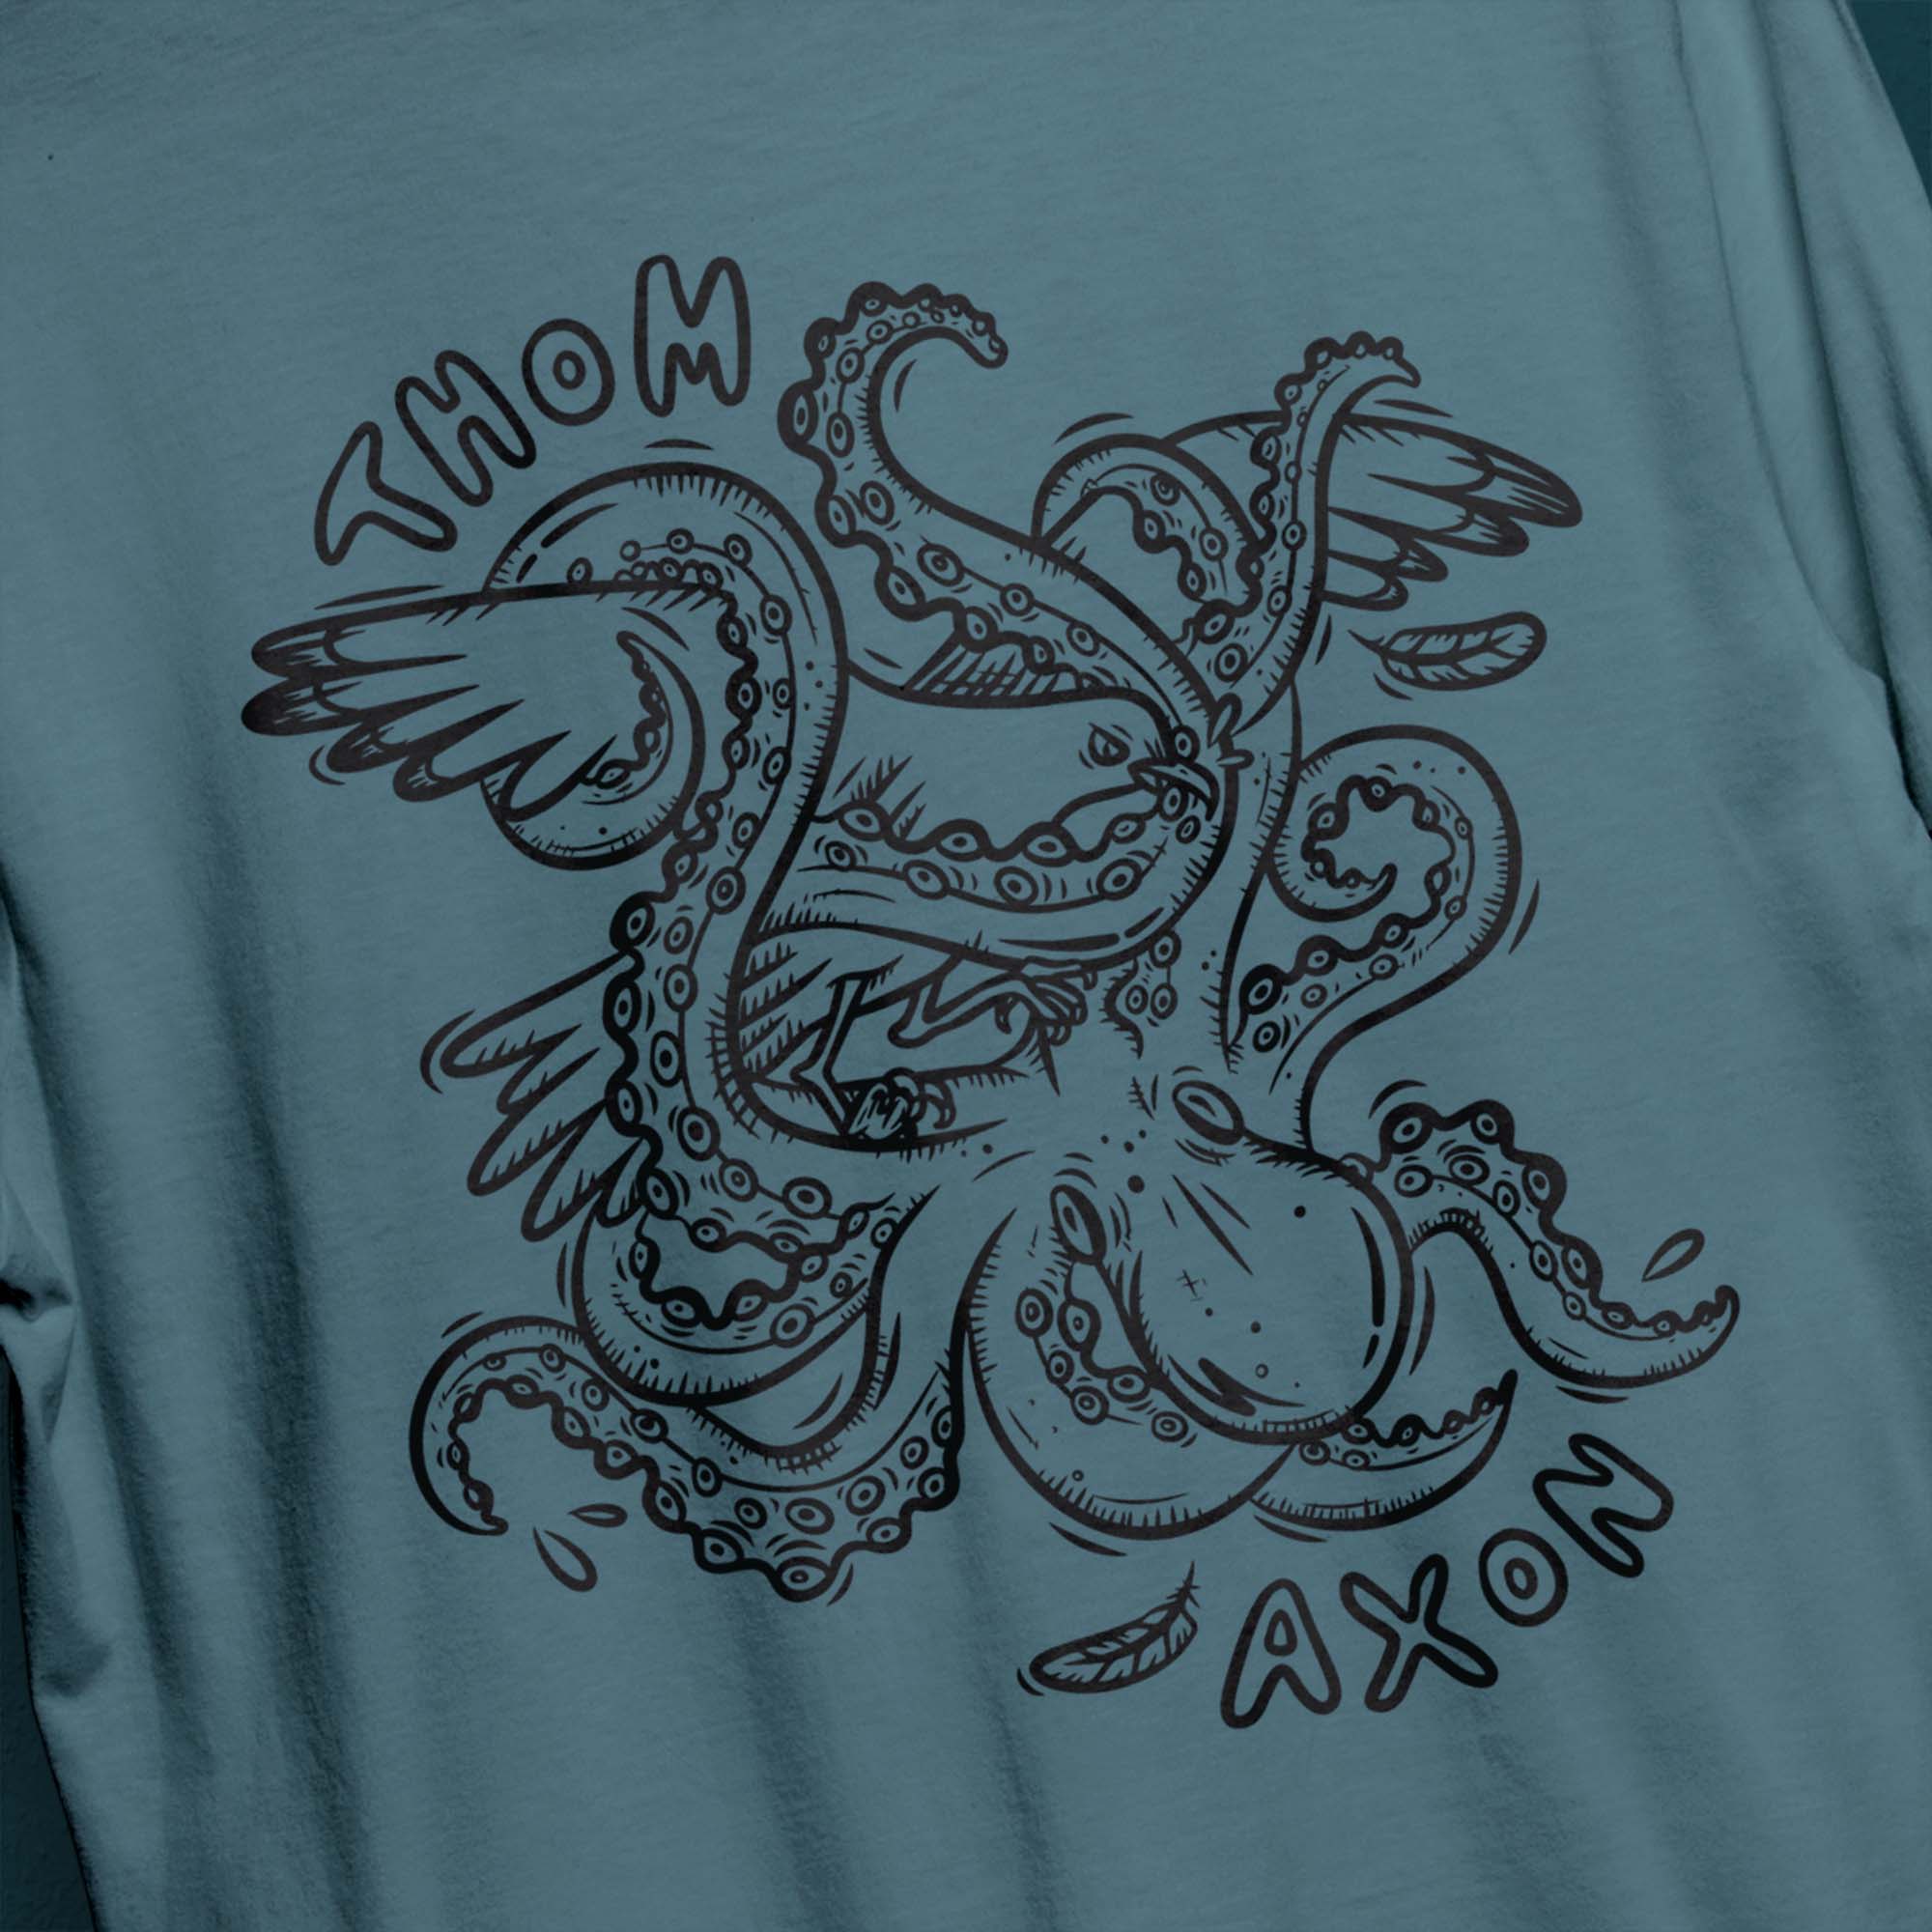 thom-axon-12